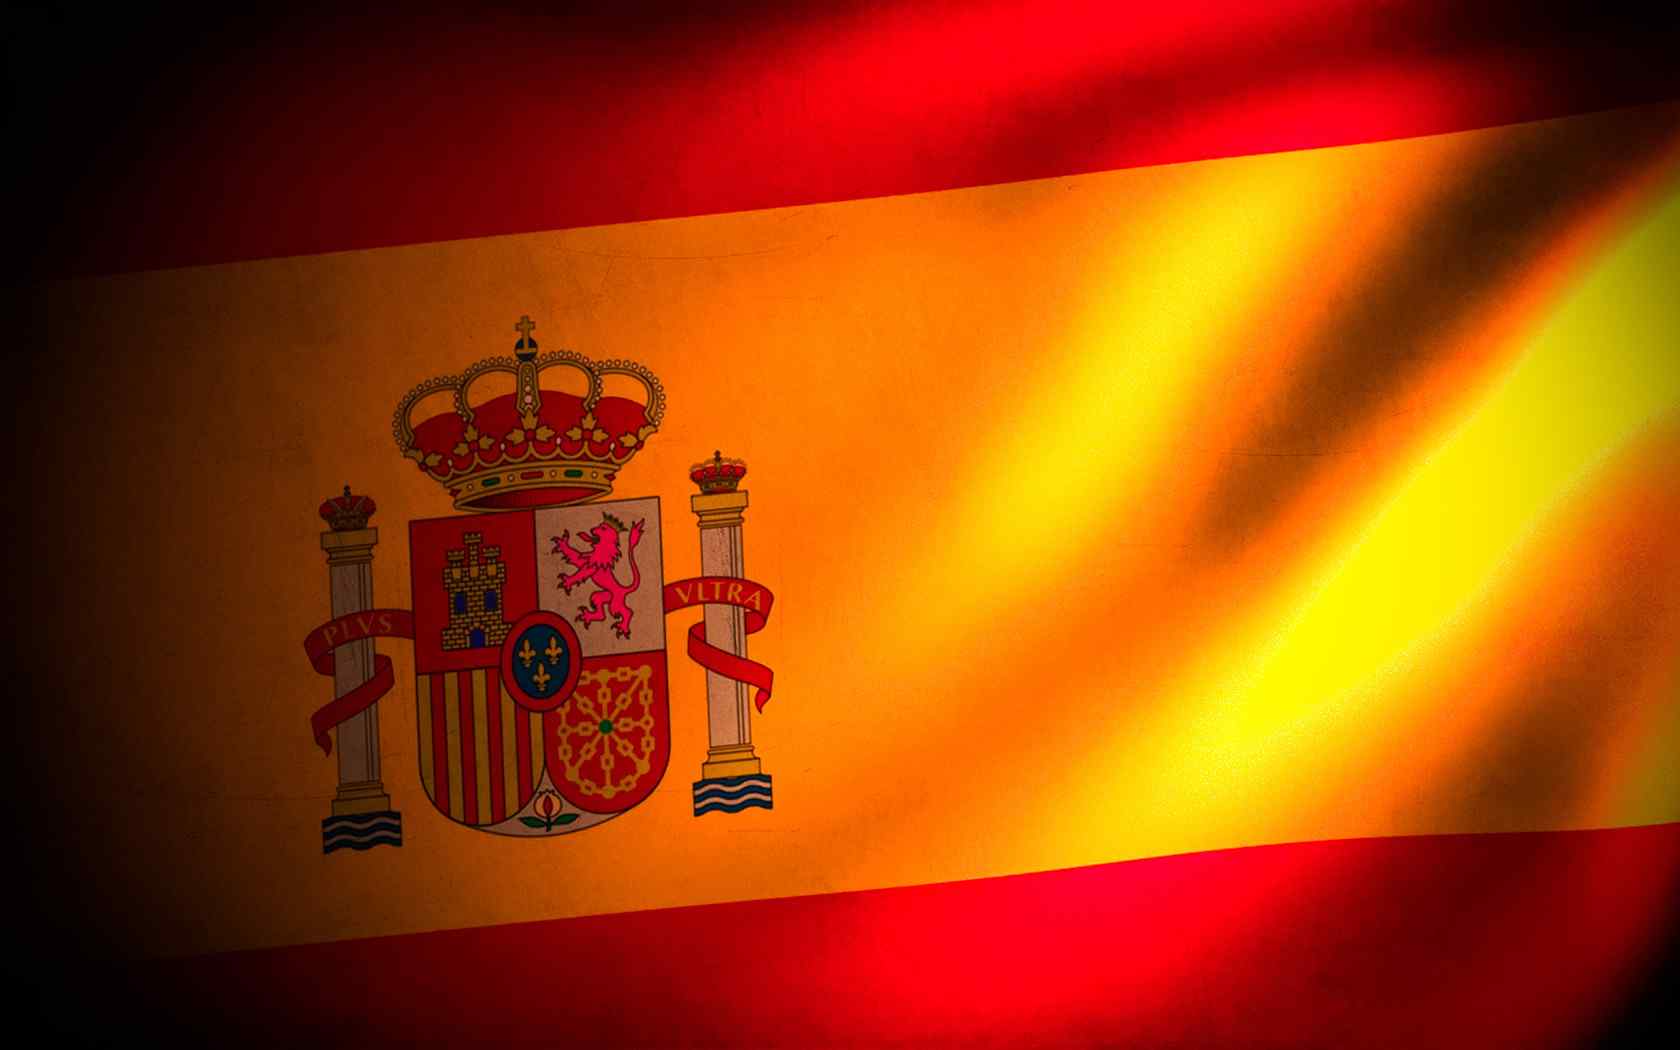 西班牙国旗创意设计电脑壁纸